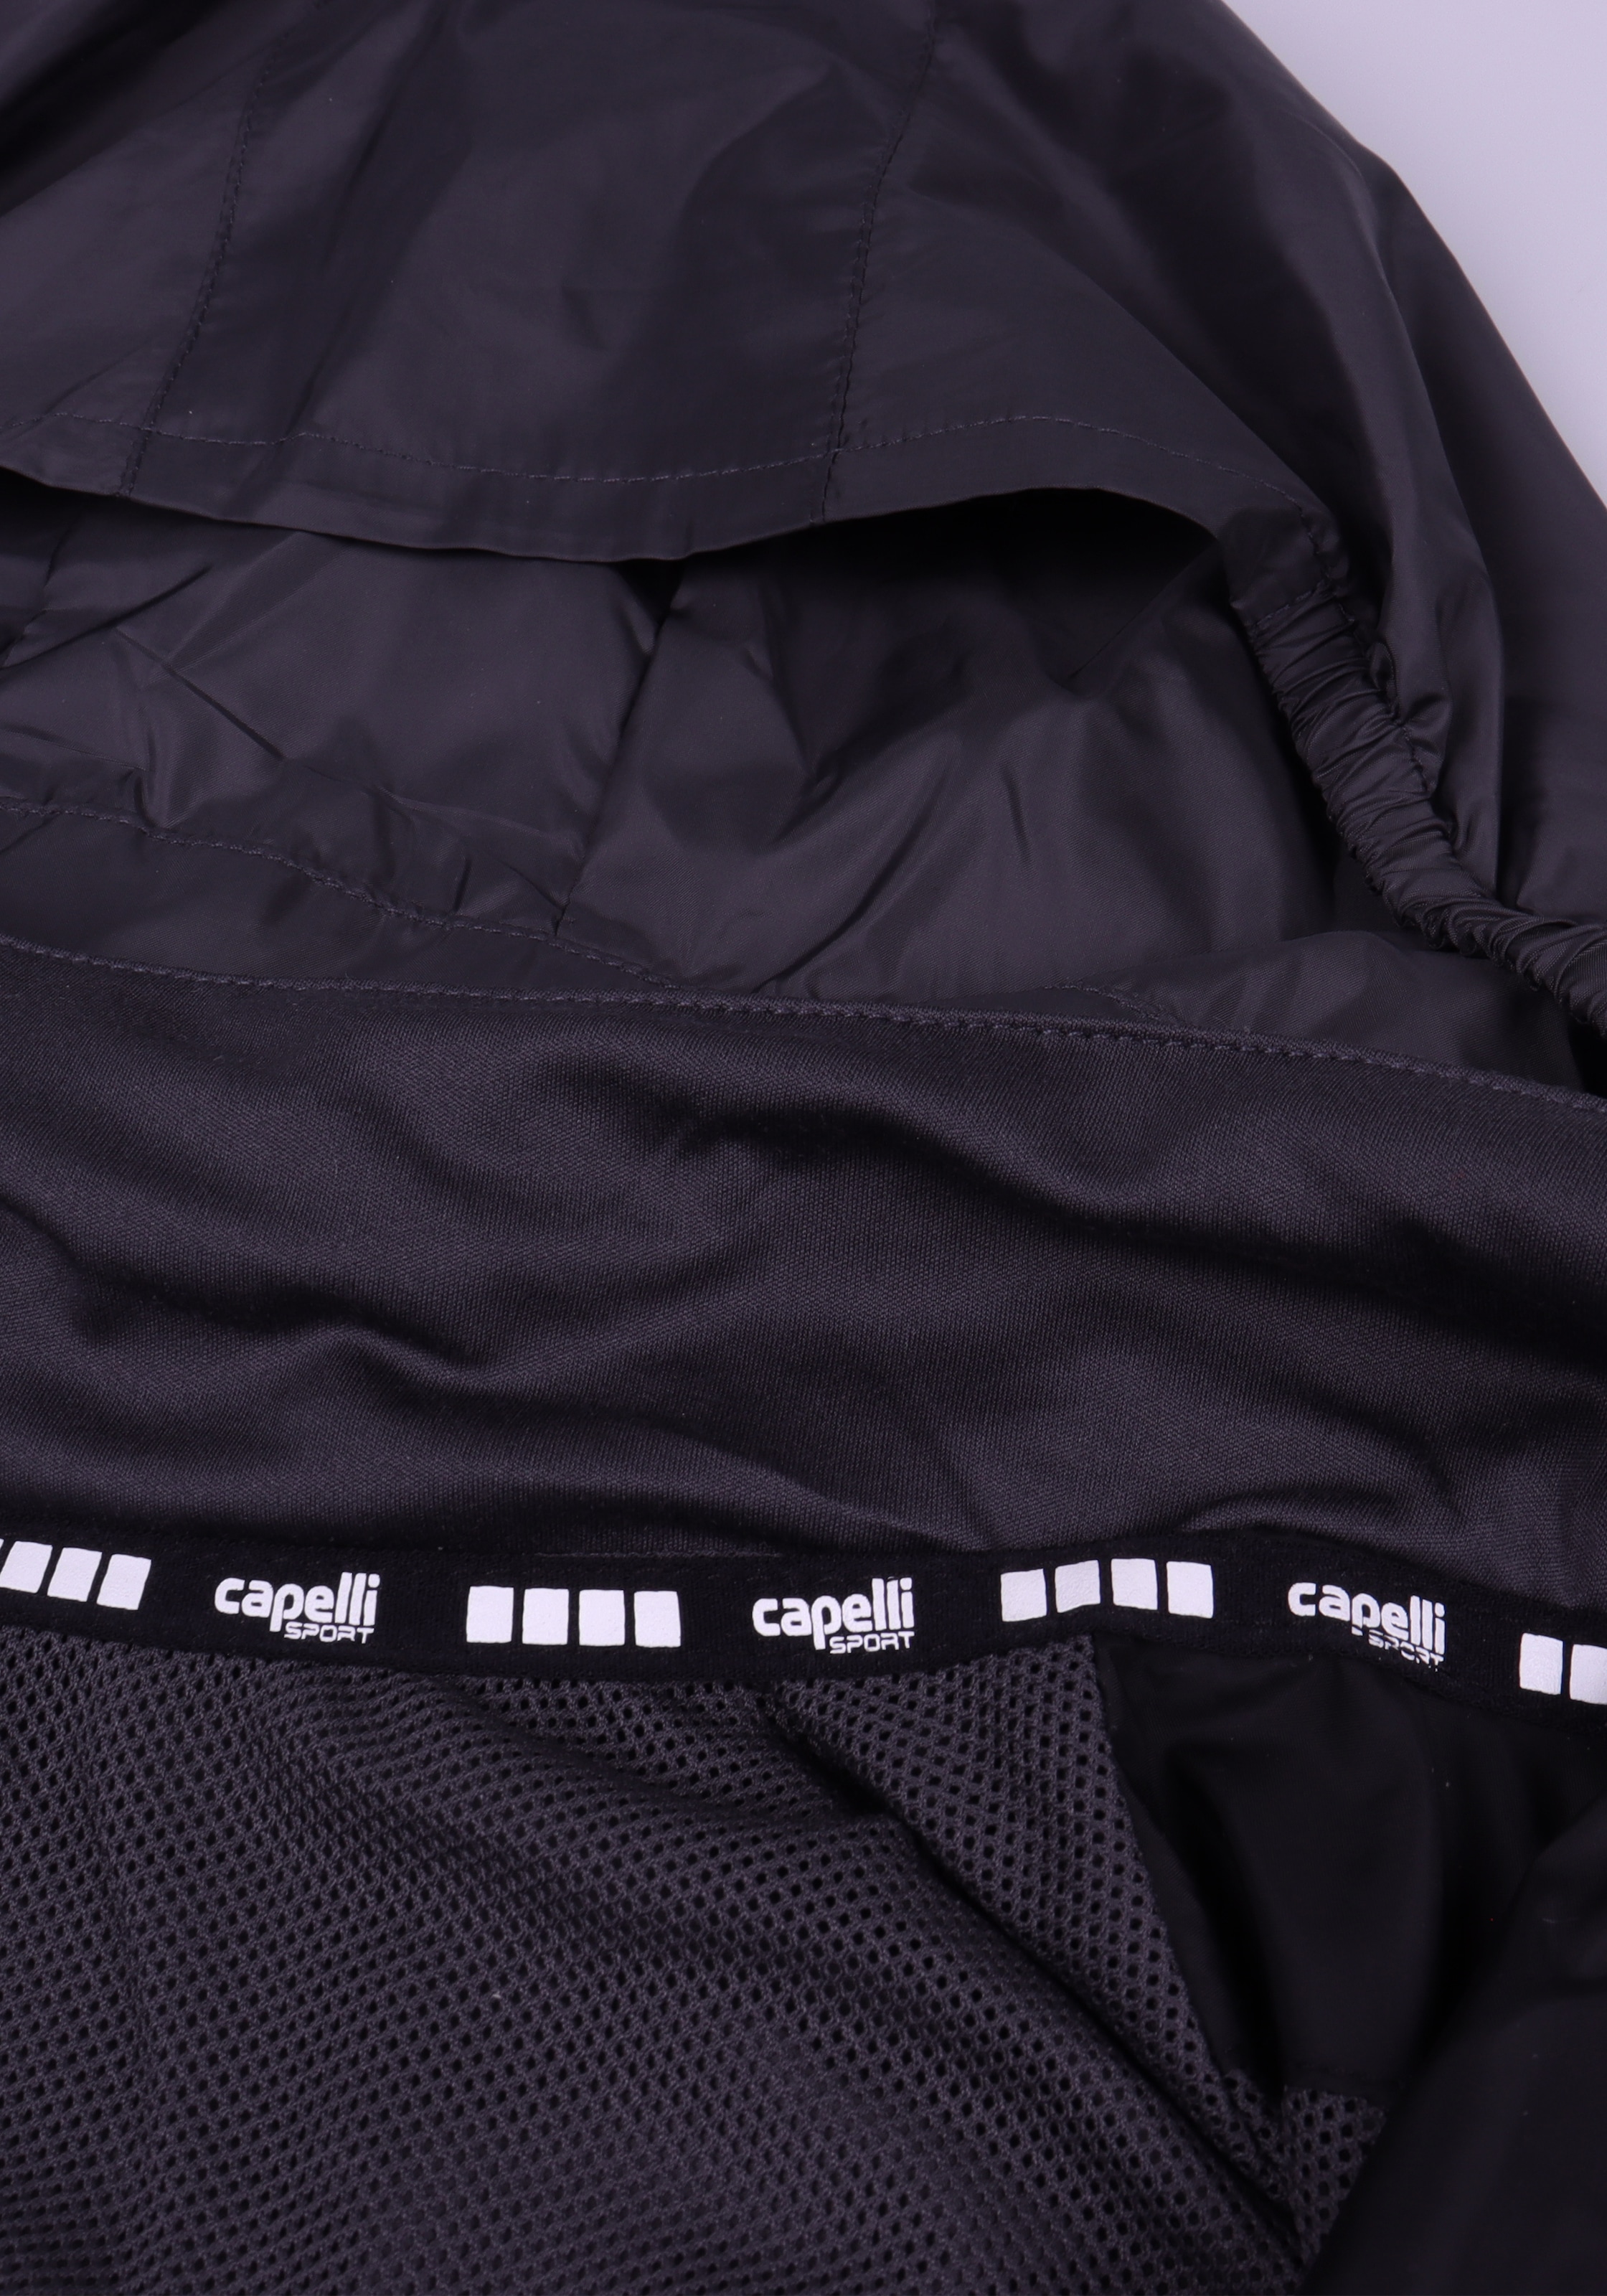 Capelli Sport Funktionsjacke, ohne Kapuze, mit seitlichen kontrastreichen Bändern